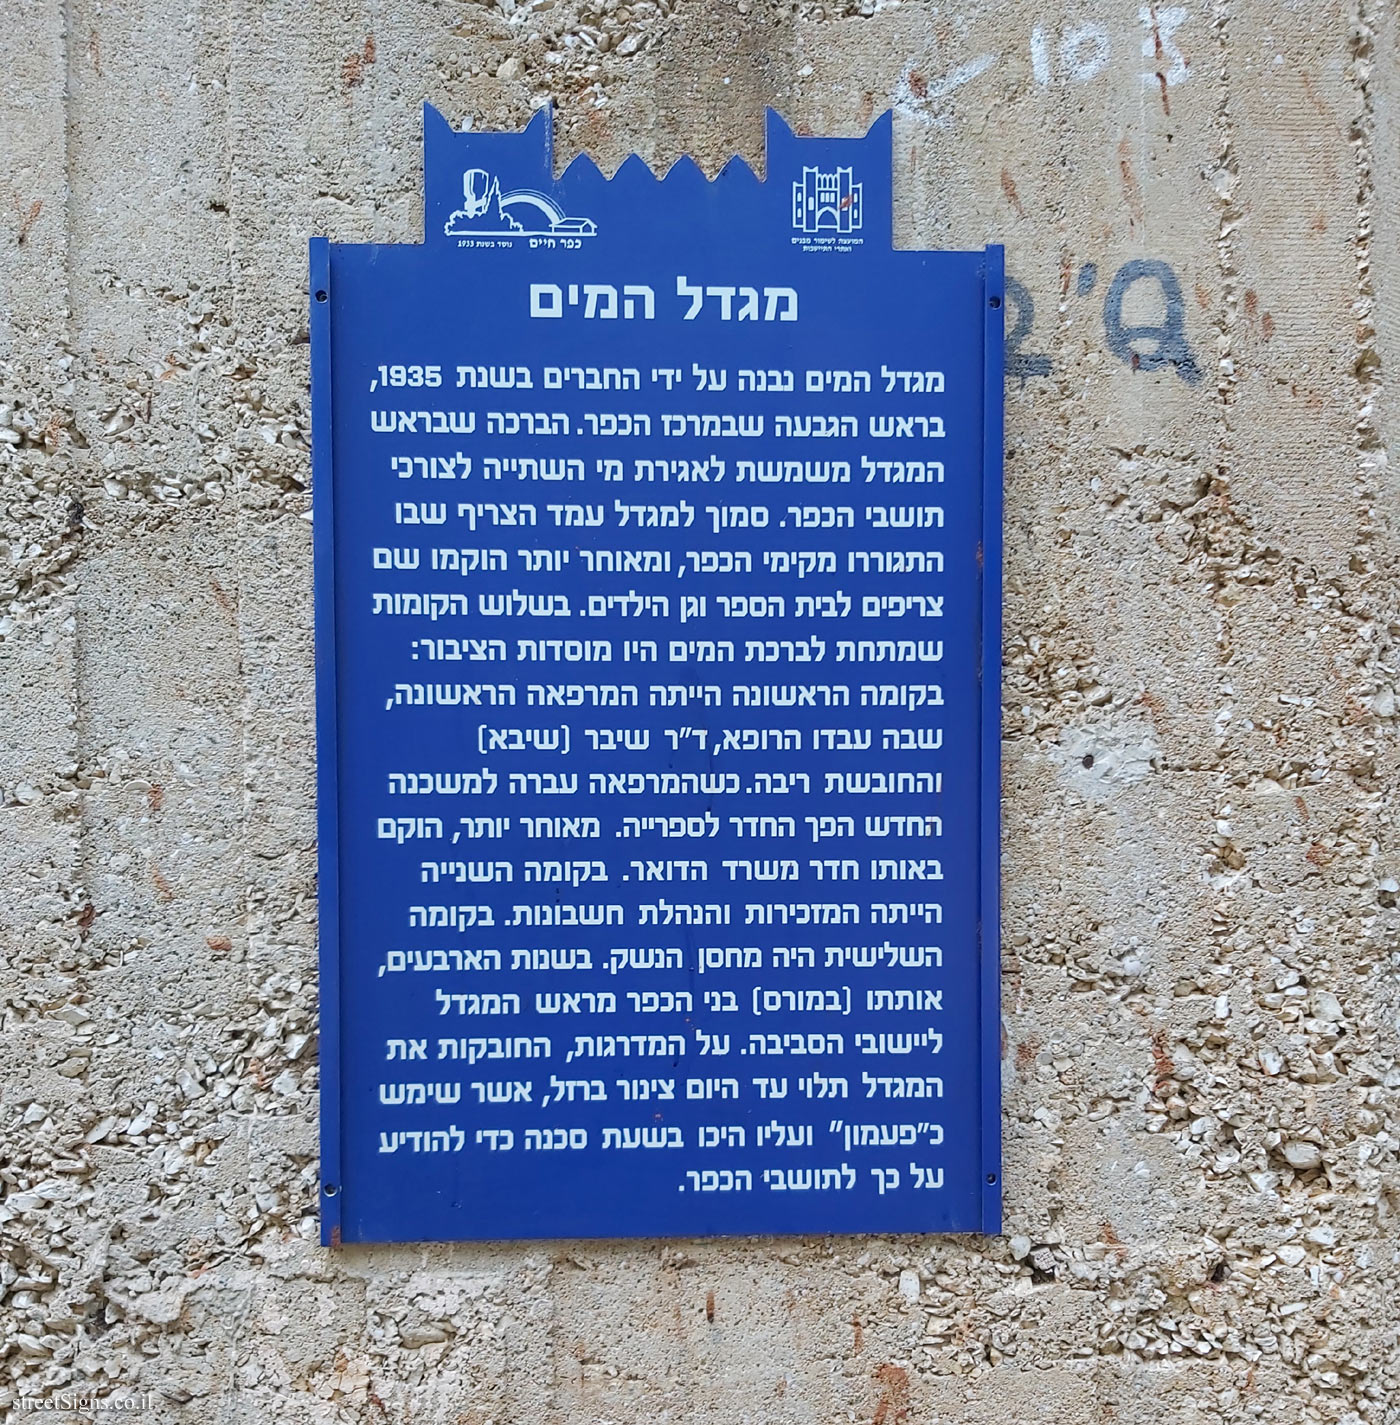 Kfar Haim - Heritage Sites in Israel - The Water tower